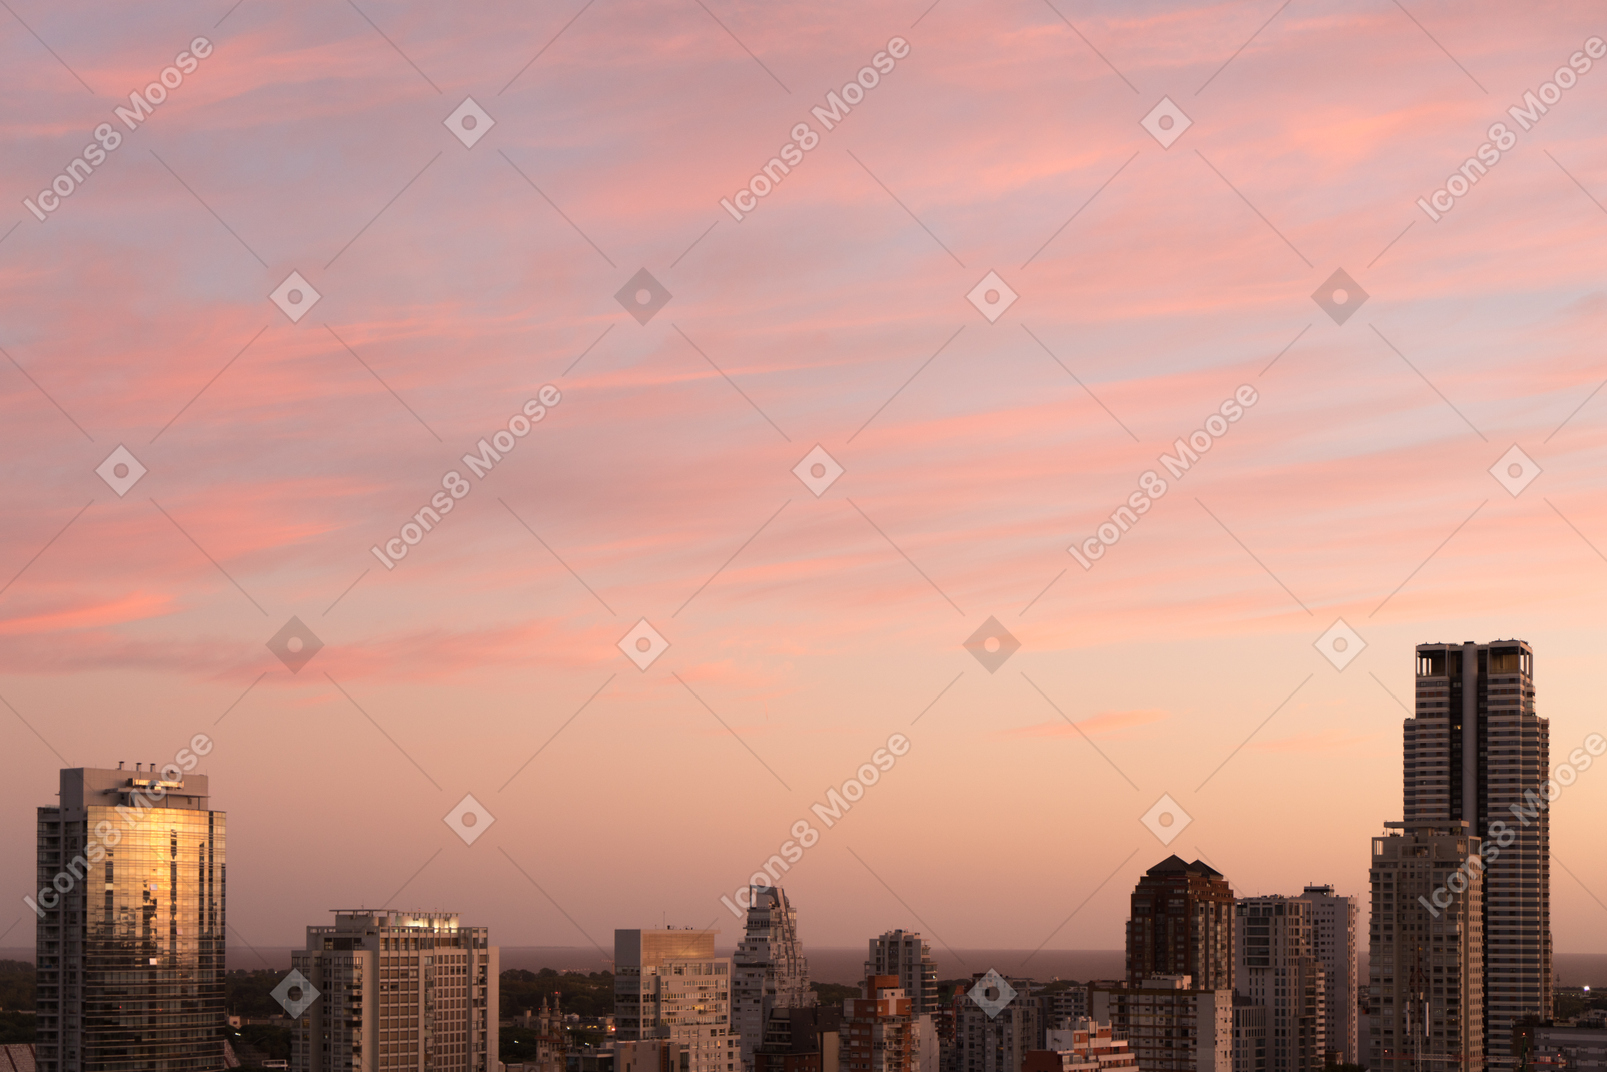 La vue de la ville à l'aube rose